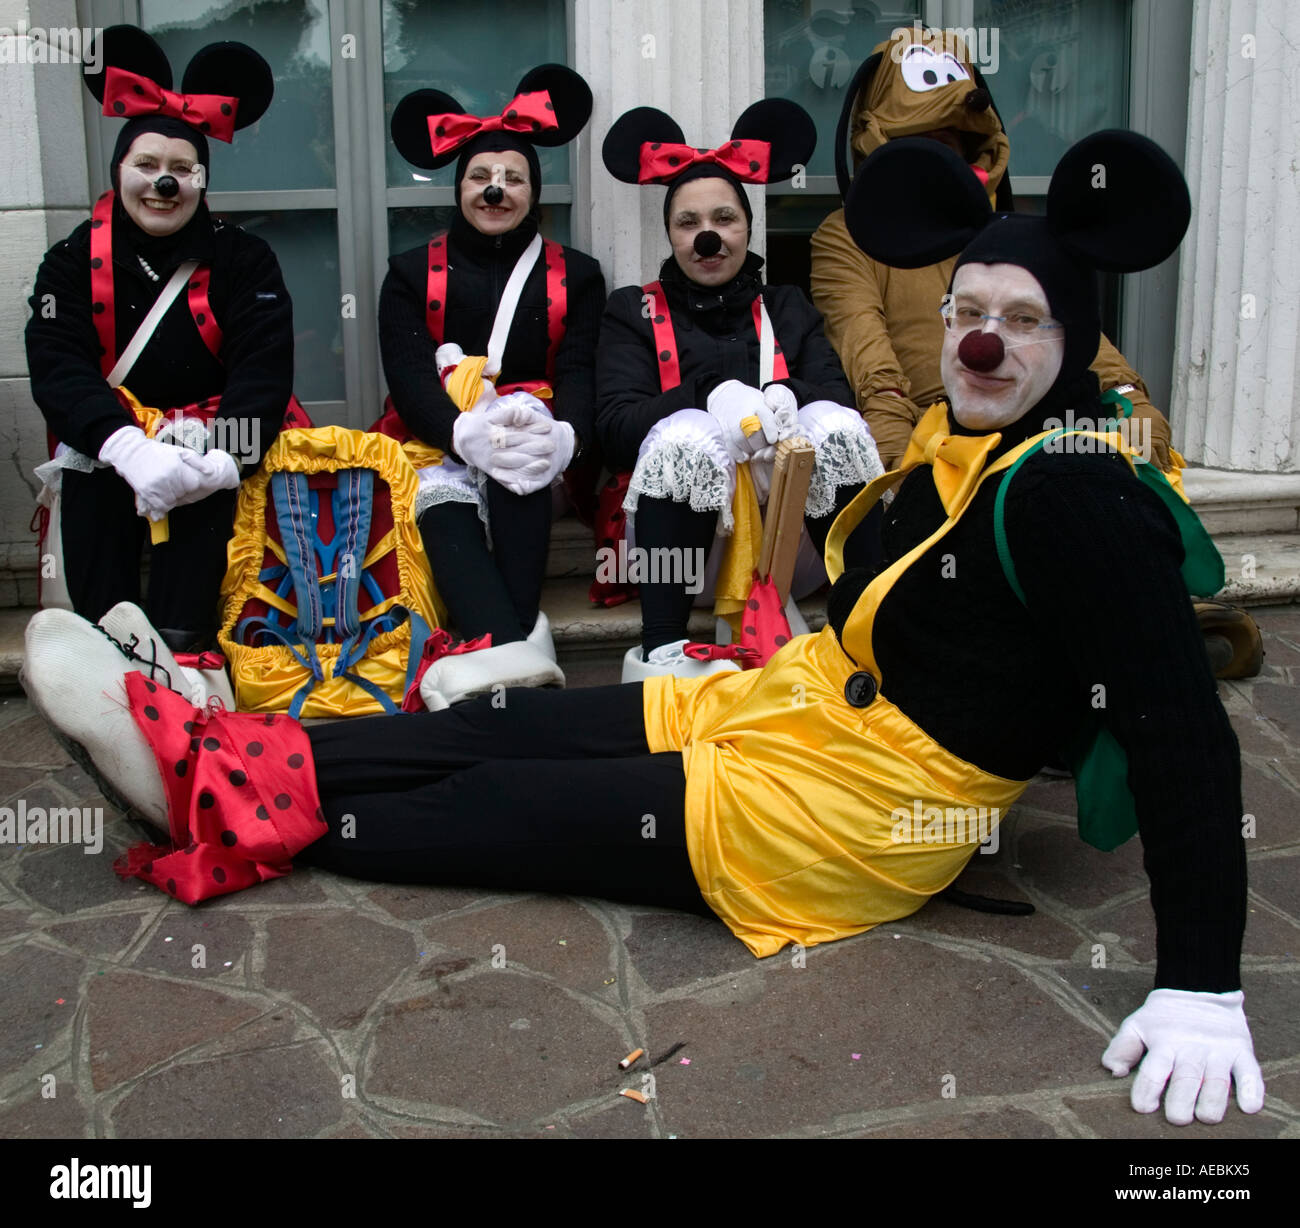 Carnevale a Venezia, personaggi vestiti come Topolino e Minnie Mouse Foto  stock - Alamy